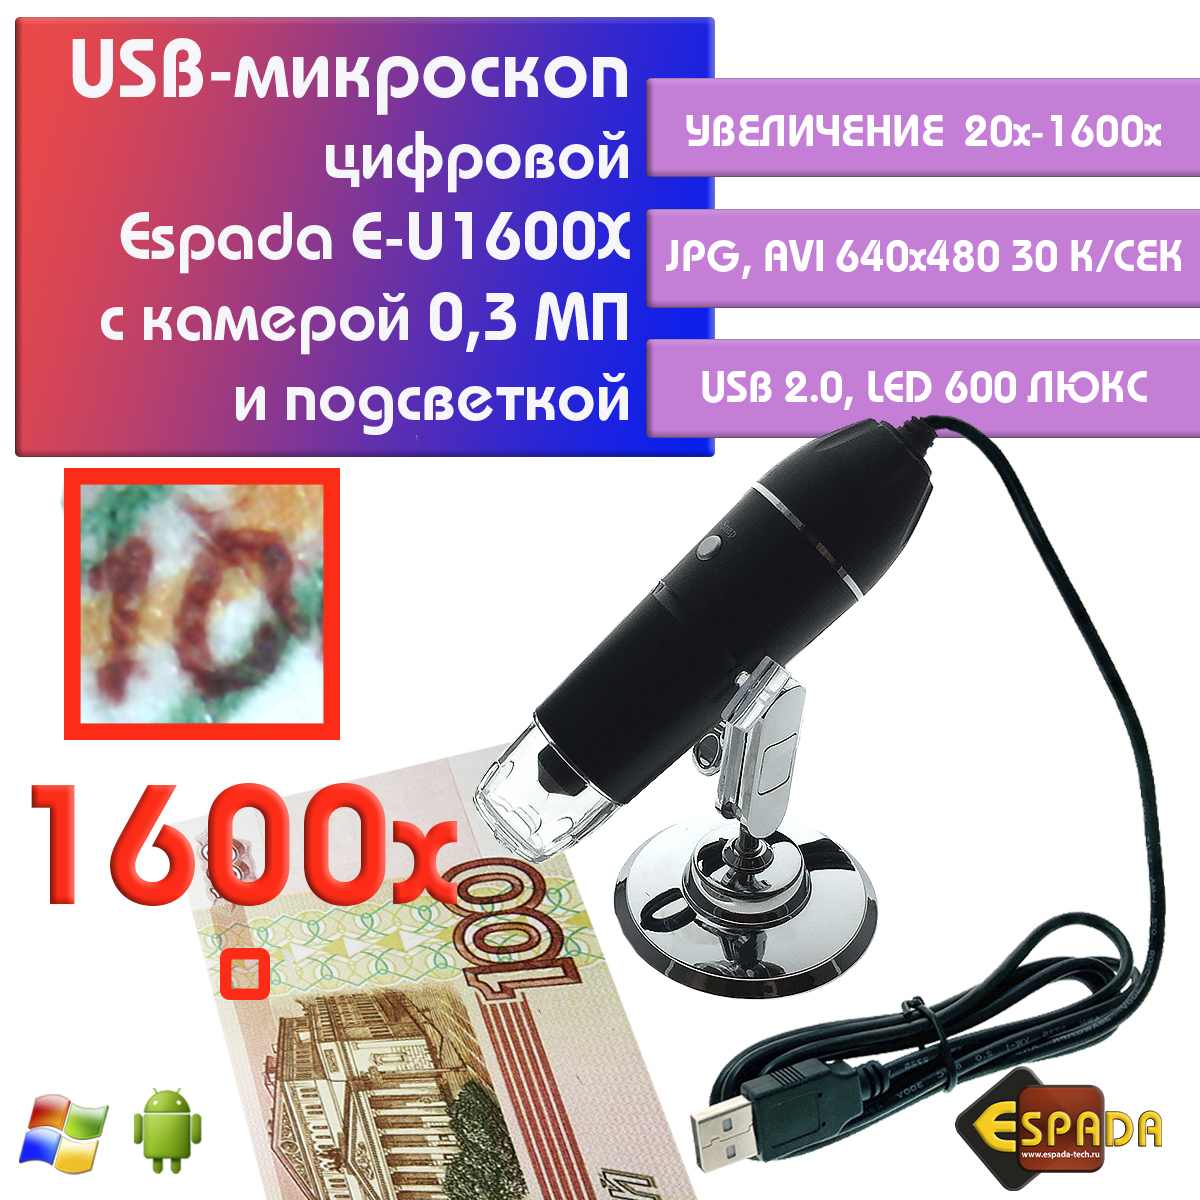 Портативный цифровой USB-микроскоп Espada E-U1600X c камерой 0,3 МП и увеличением 1600x микроскоп монокуляр espada usb g1200b с дисплеем 7 и подставкой